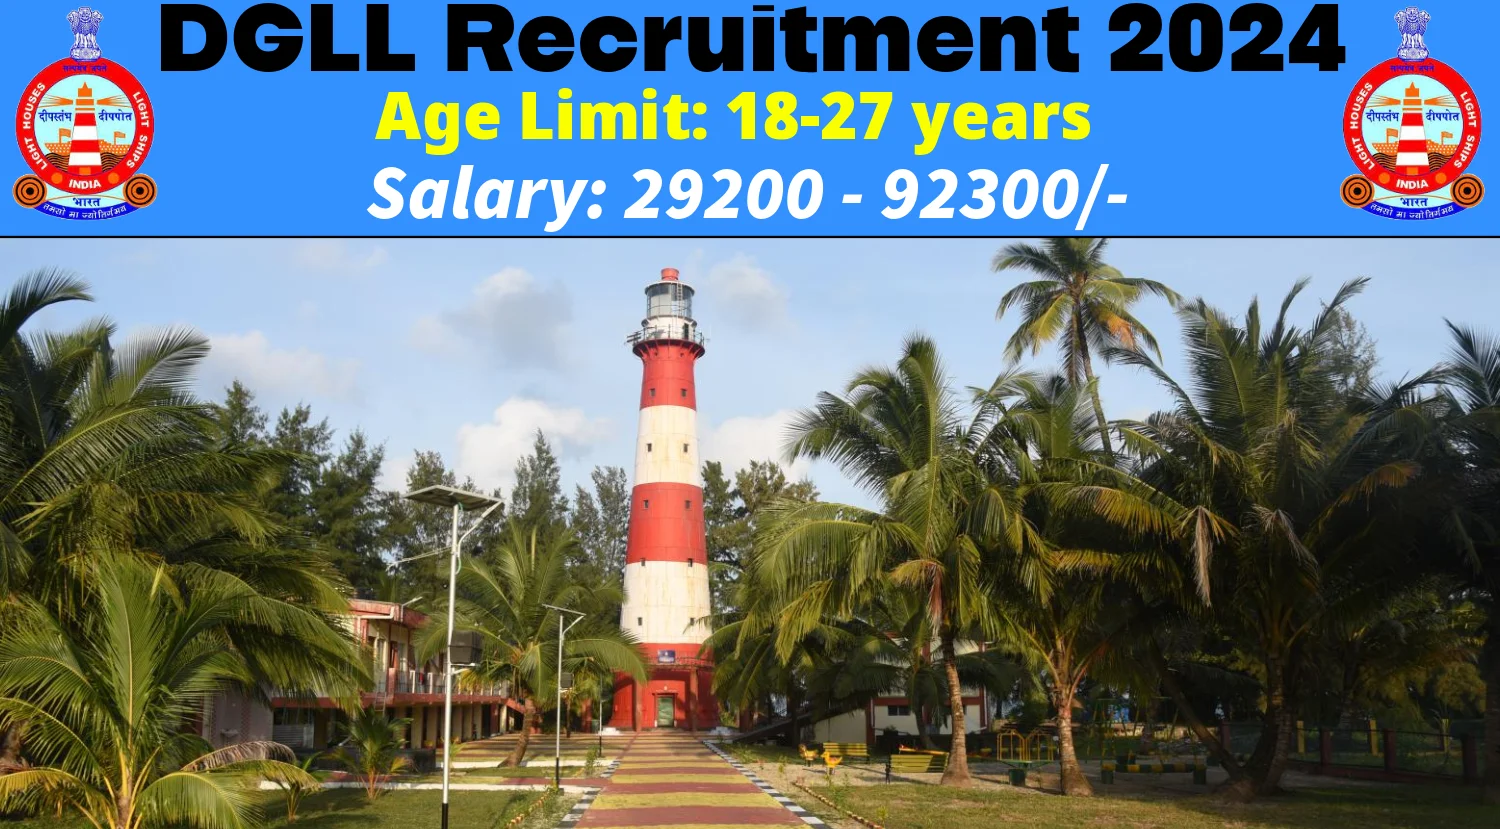 DGLL Recruitment 2024